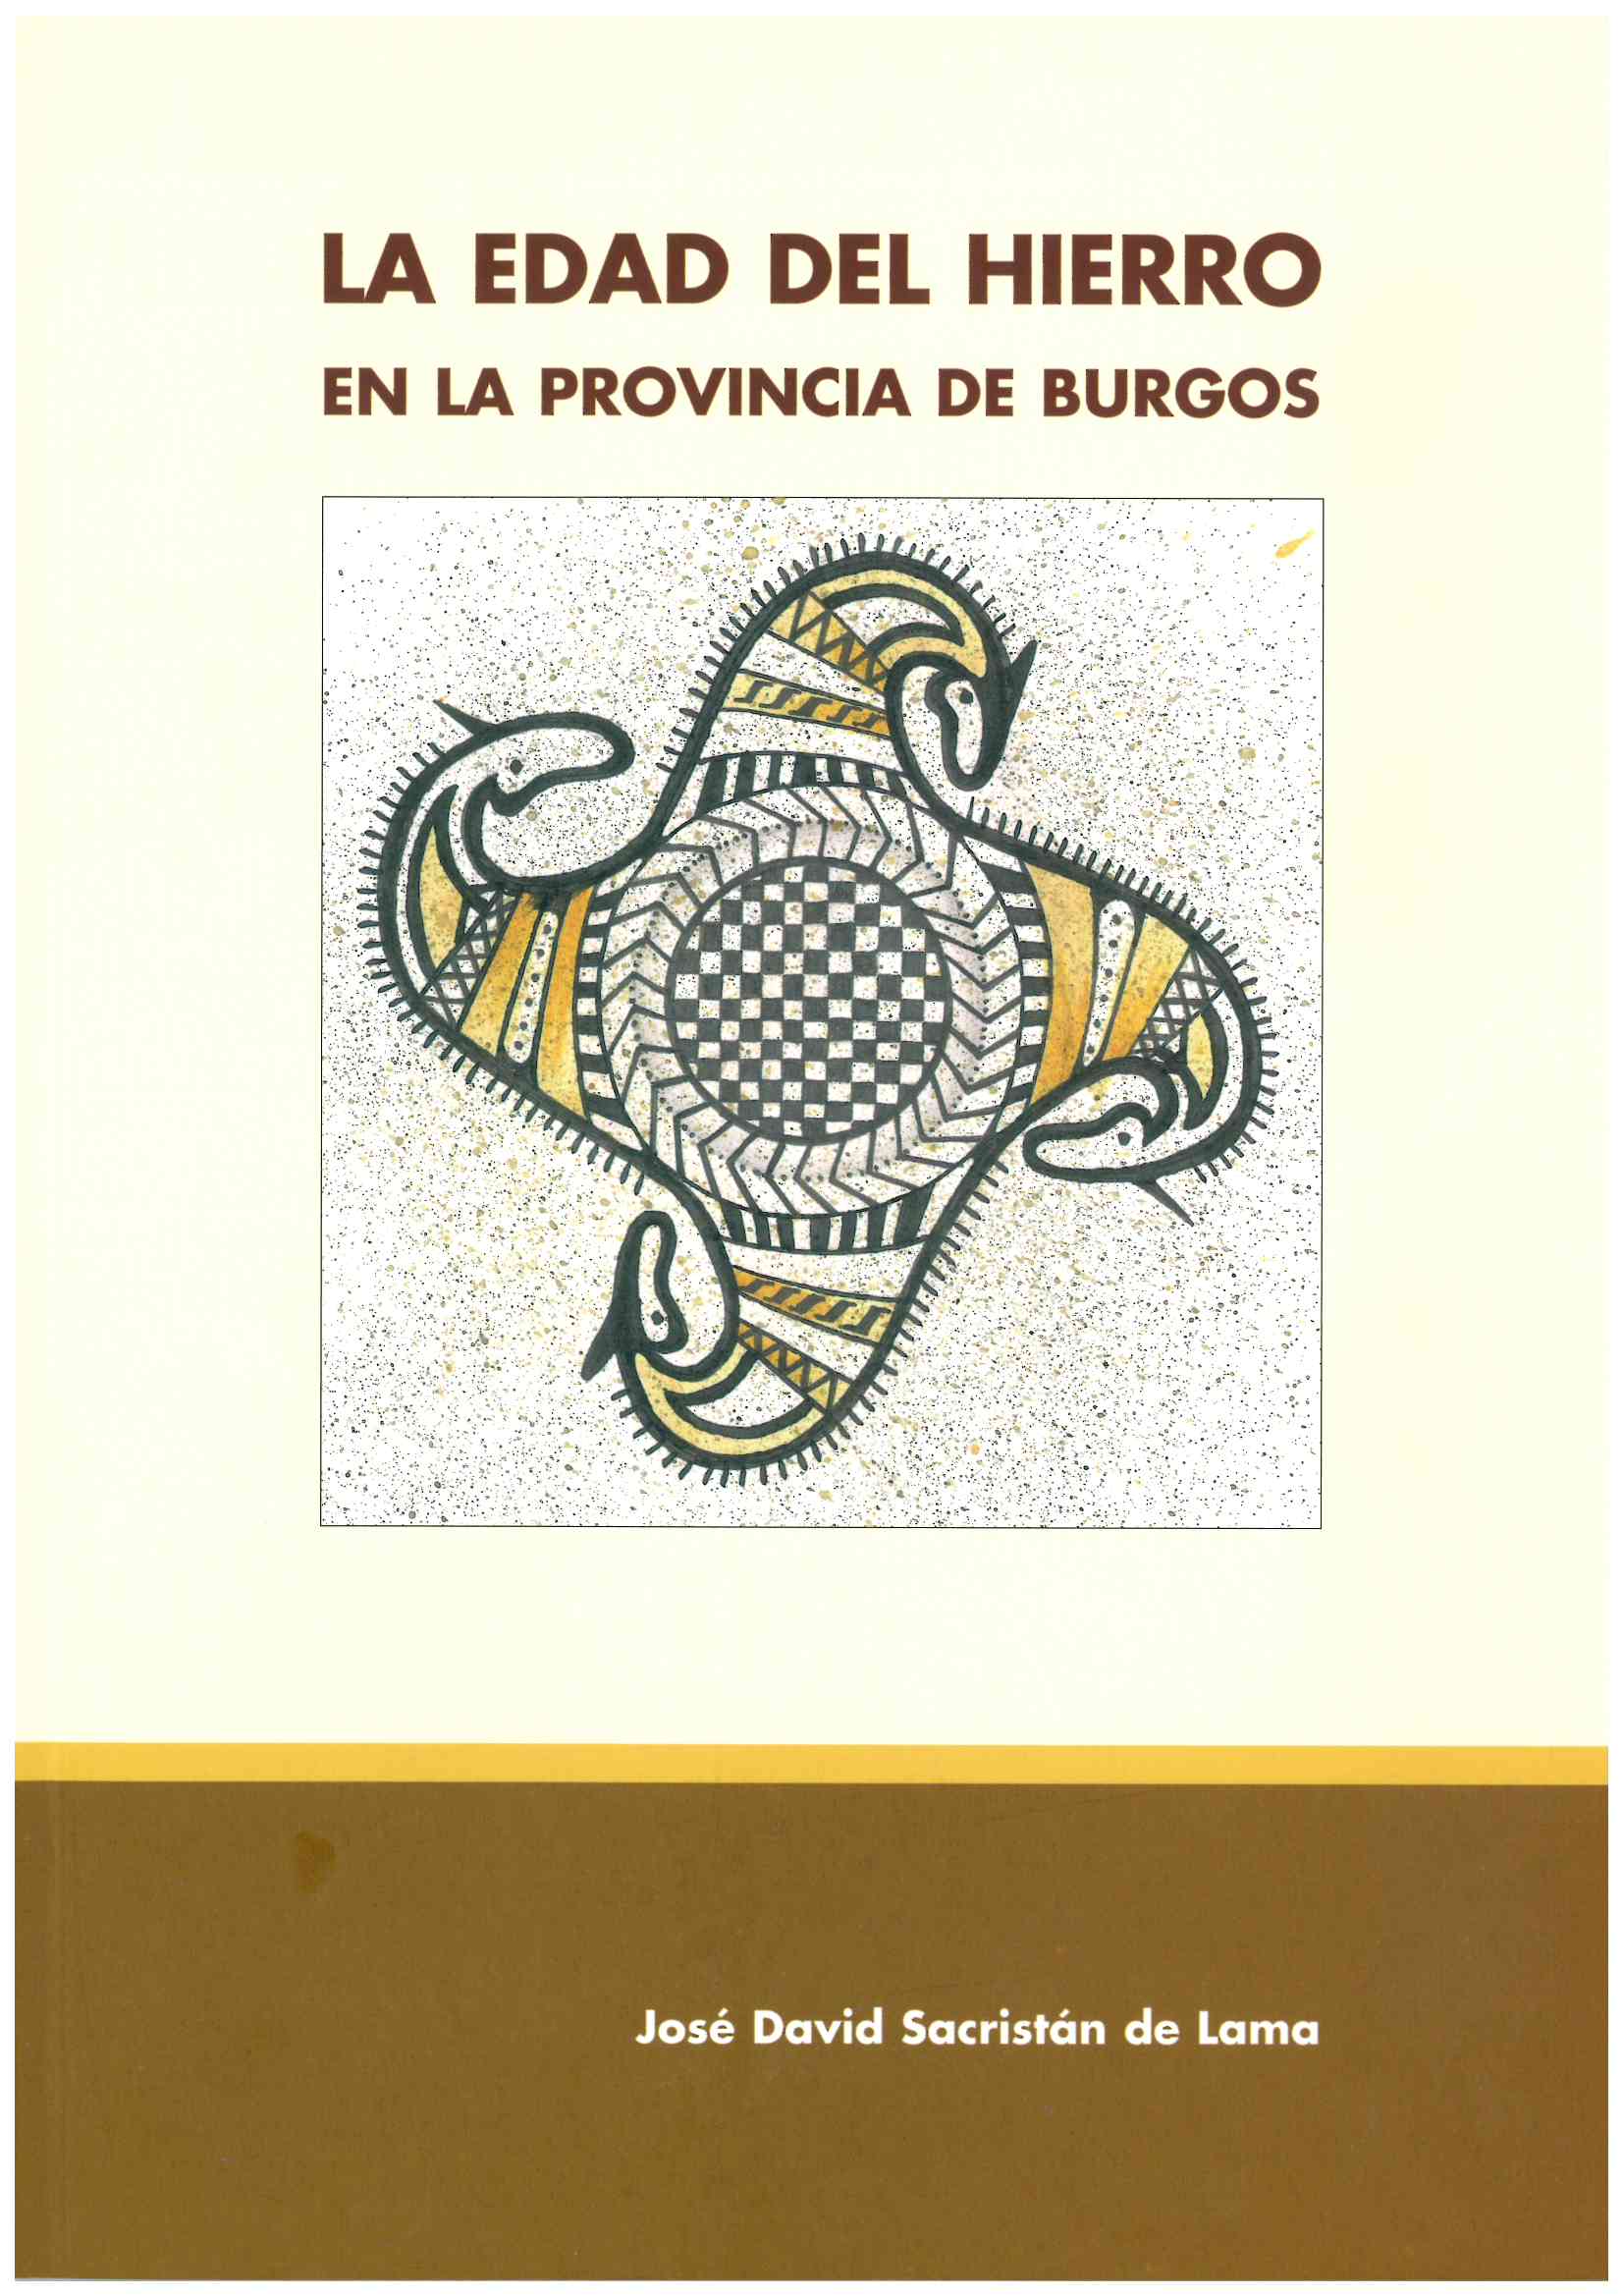 Imagen de portada del libro La Edad del Hierro en la provincia de Burgos